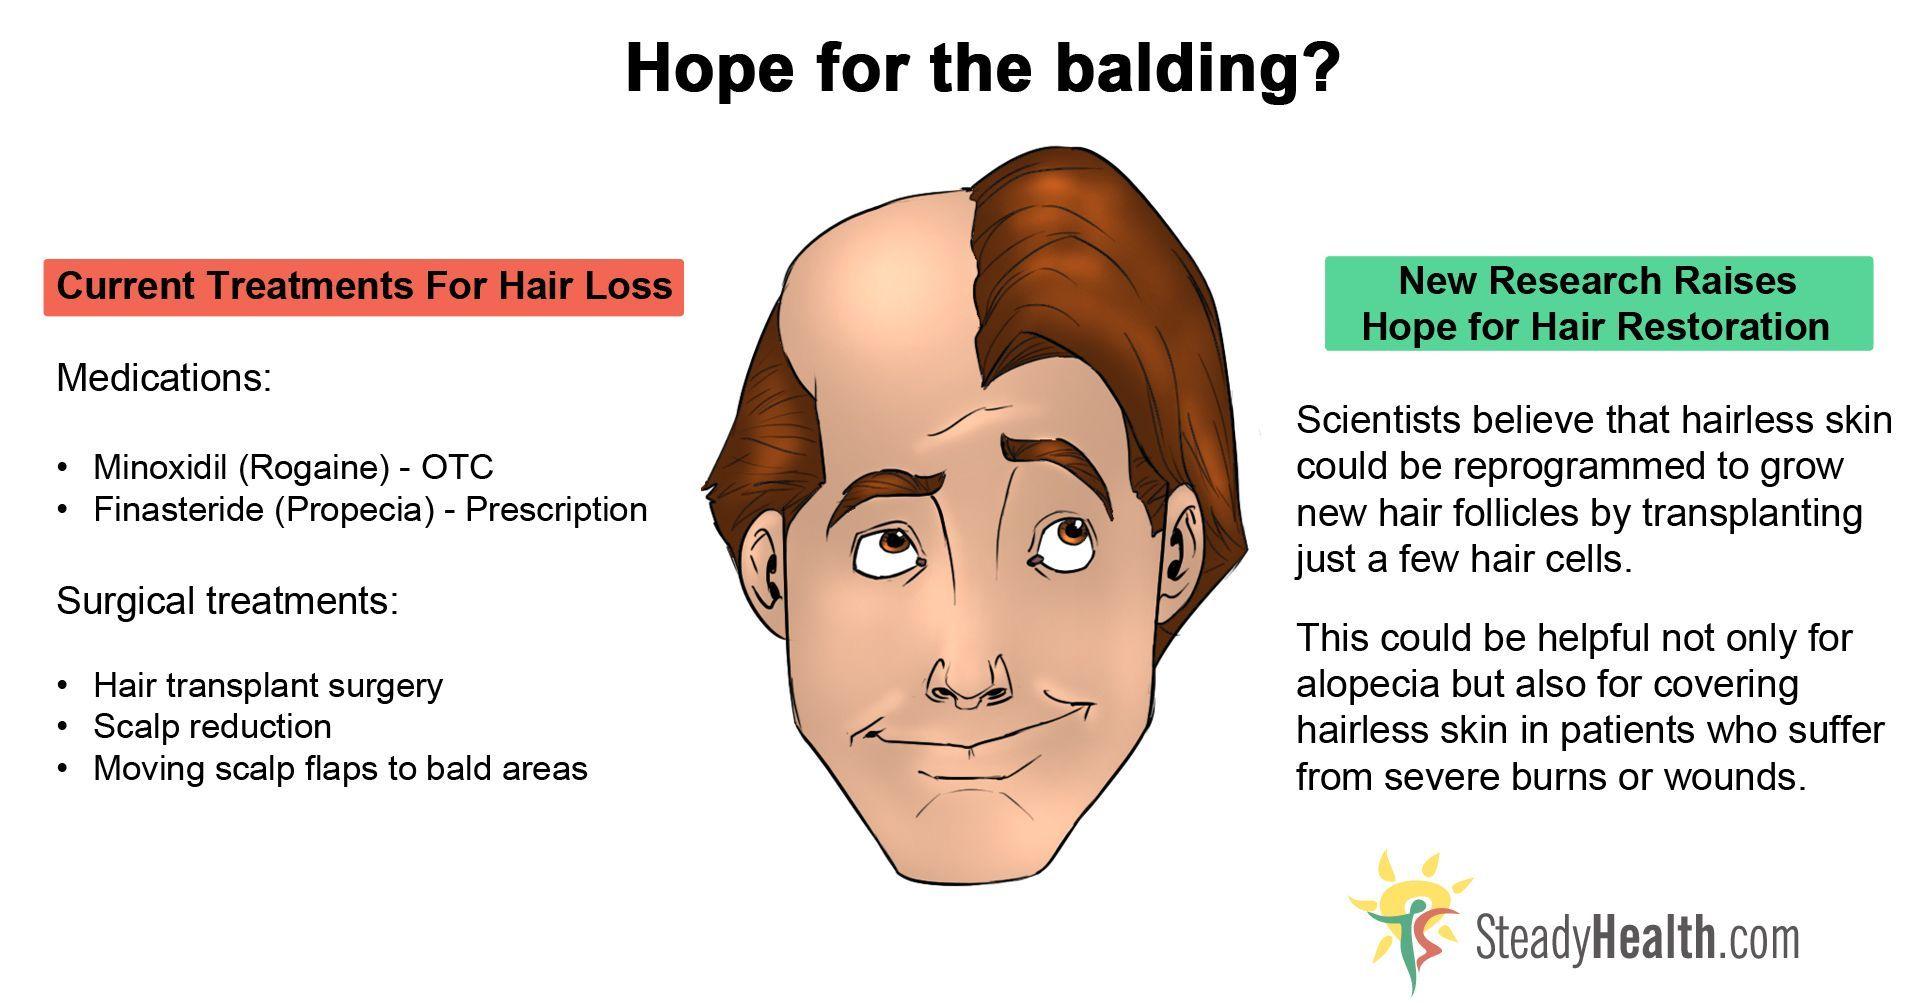 Masturbation cause baldness